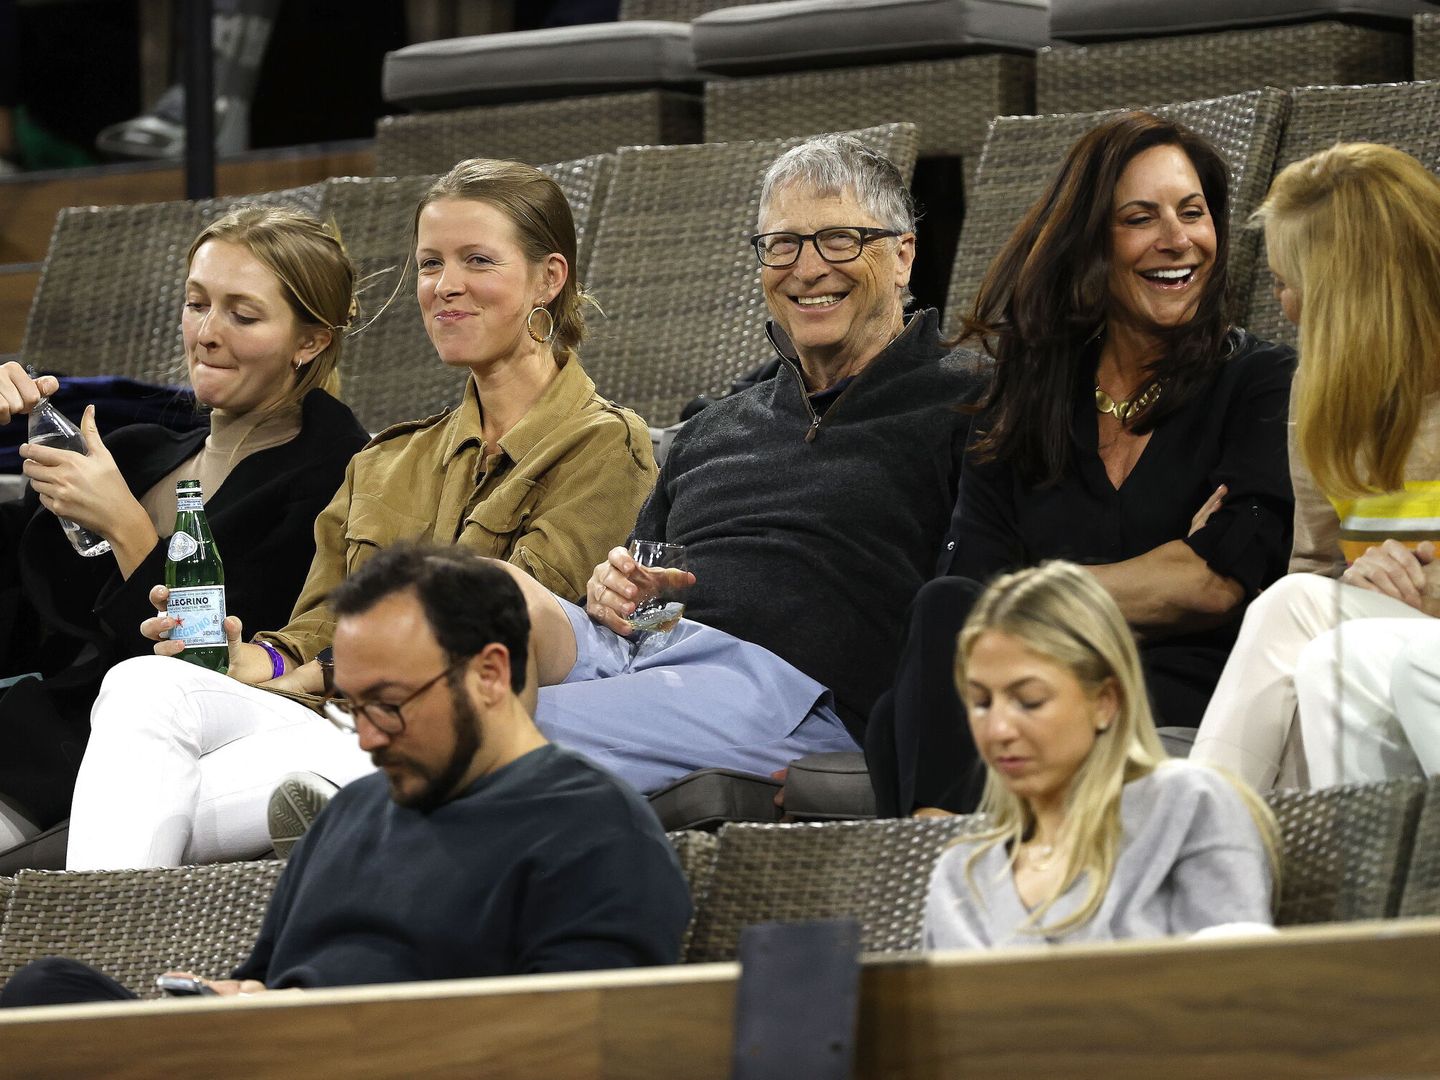 El filántropo y fundador de Microsoft, Bill Gates, presencia el torneo de tenis de Indian Wells el año pasado. (John Mabanglo/EPA)